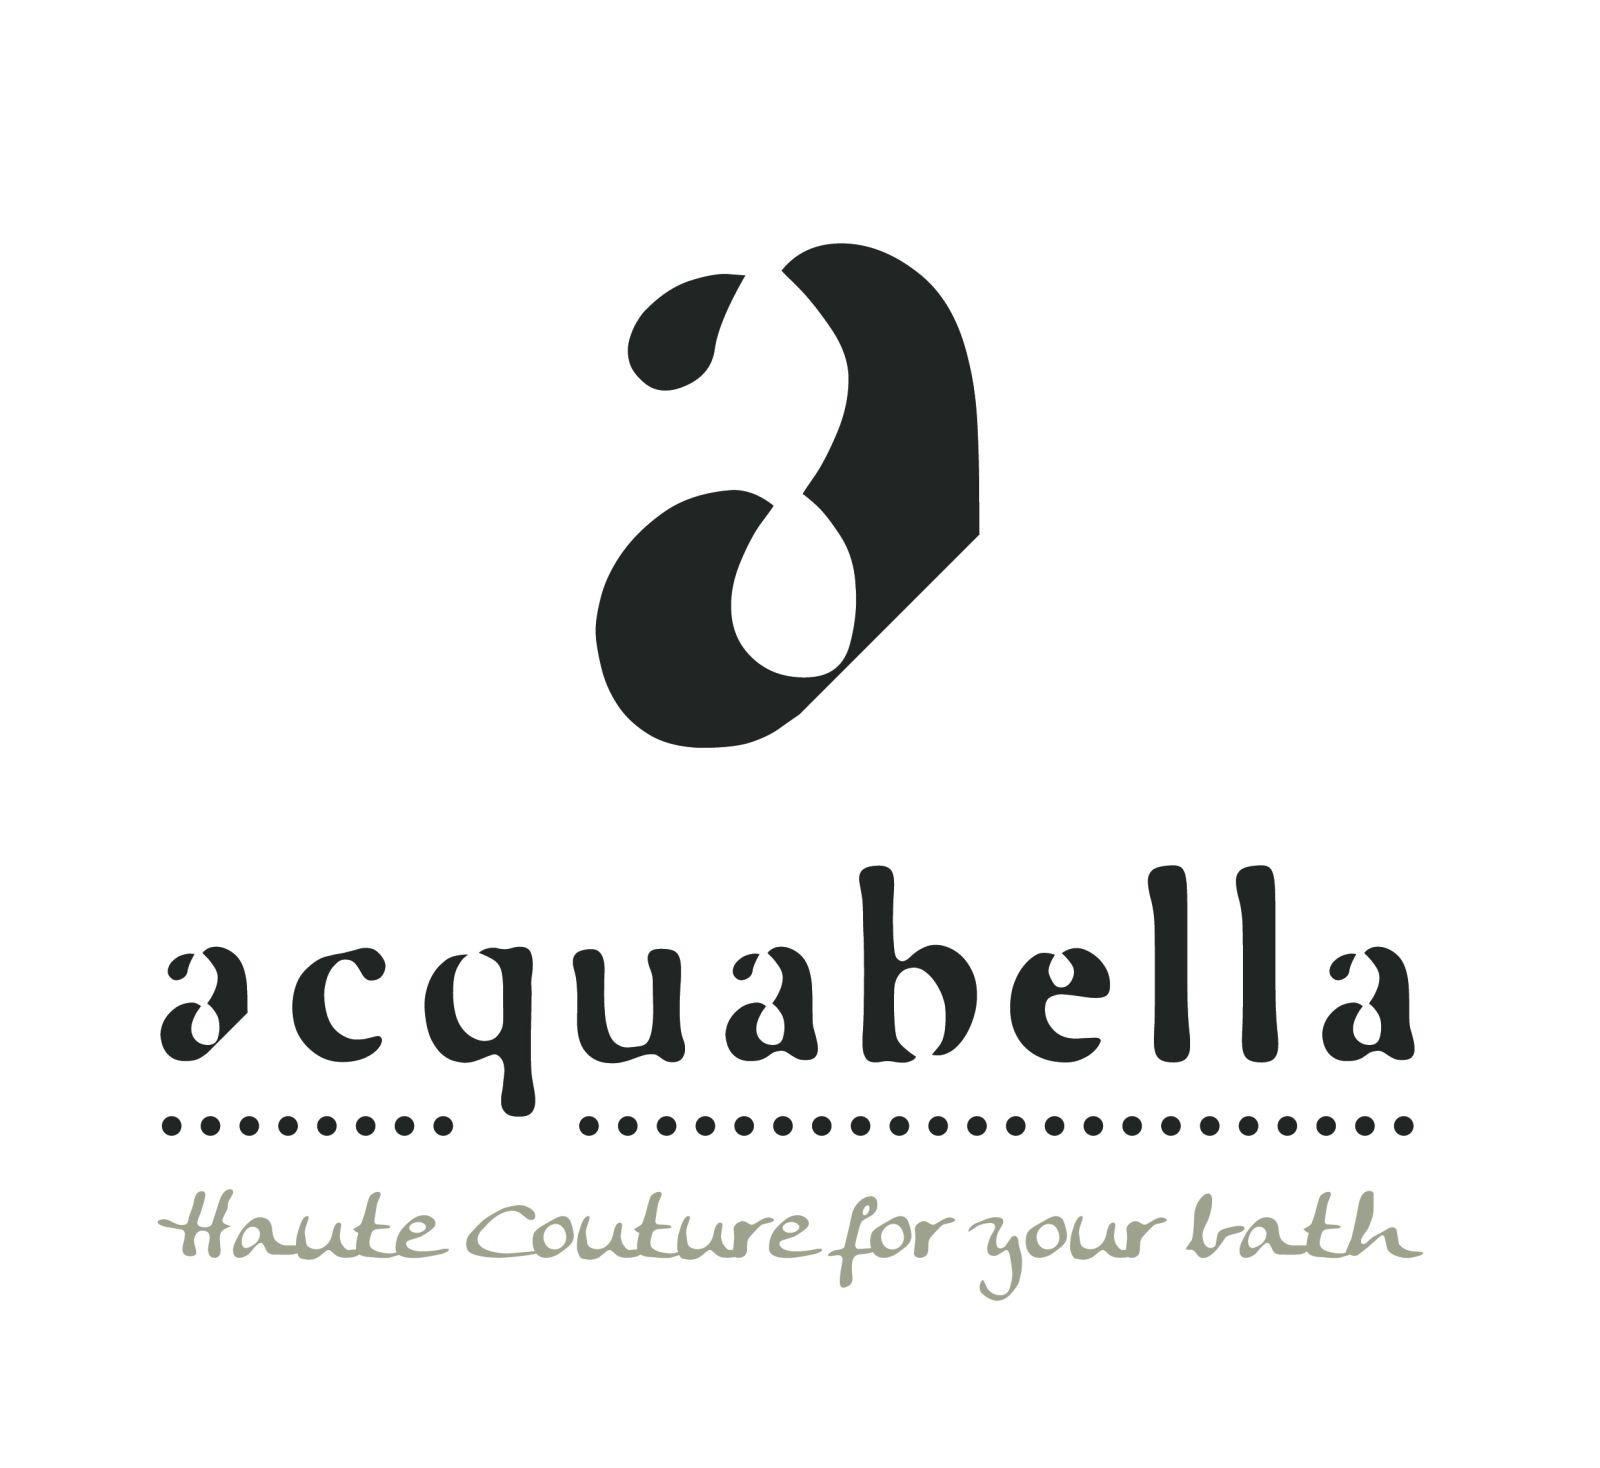 Acquabella